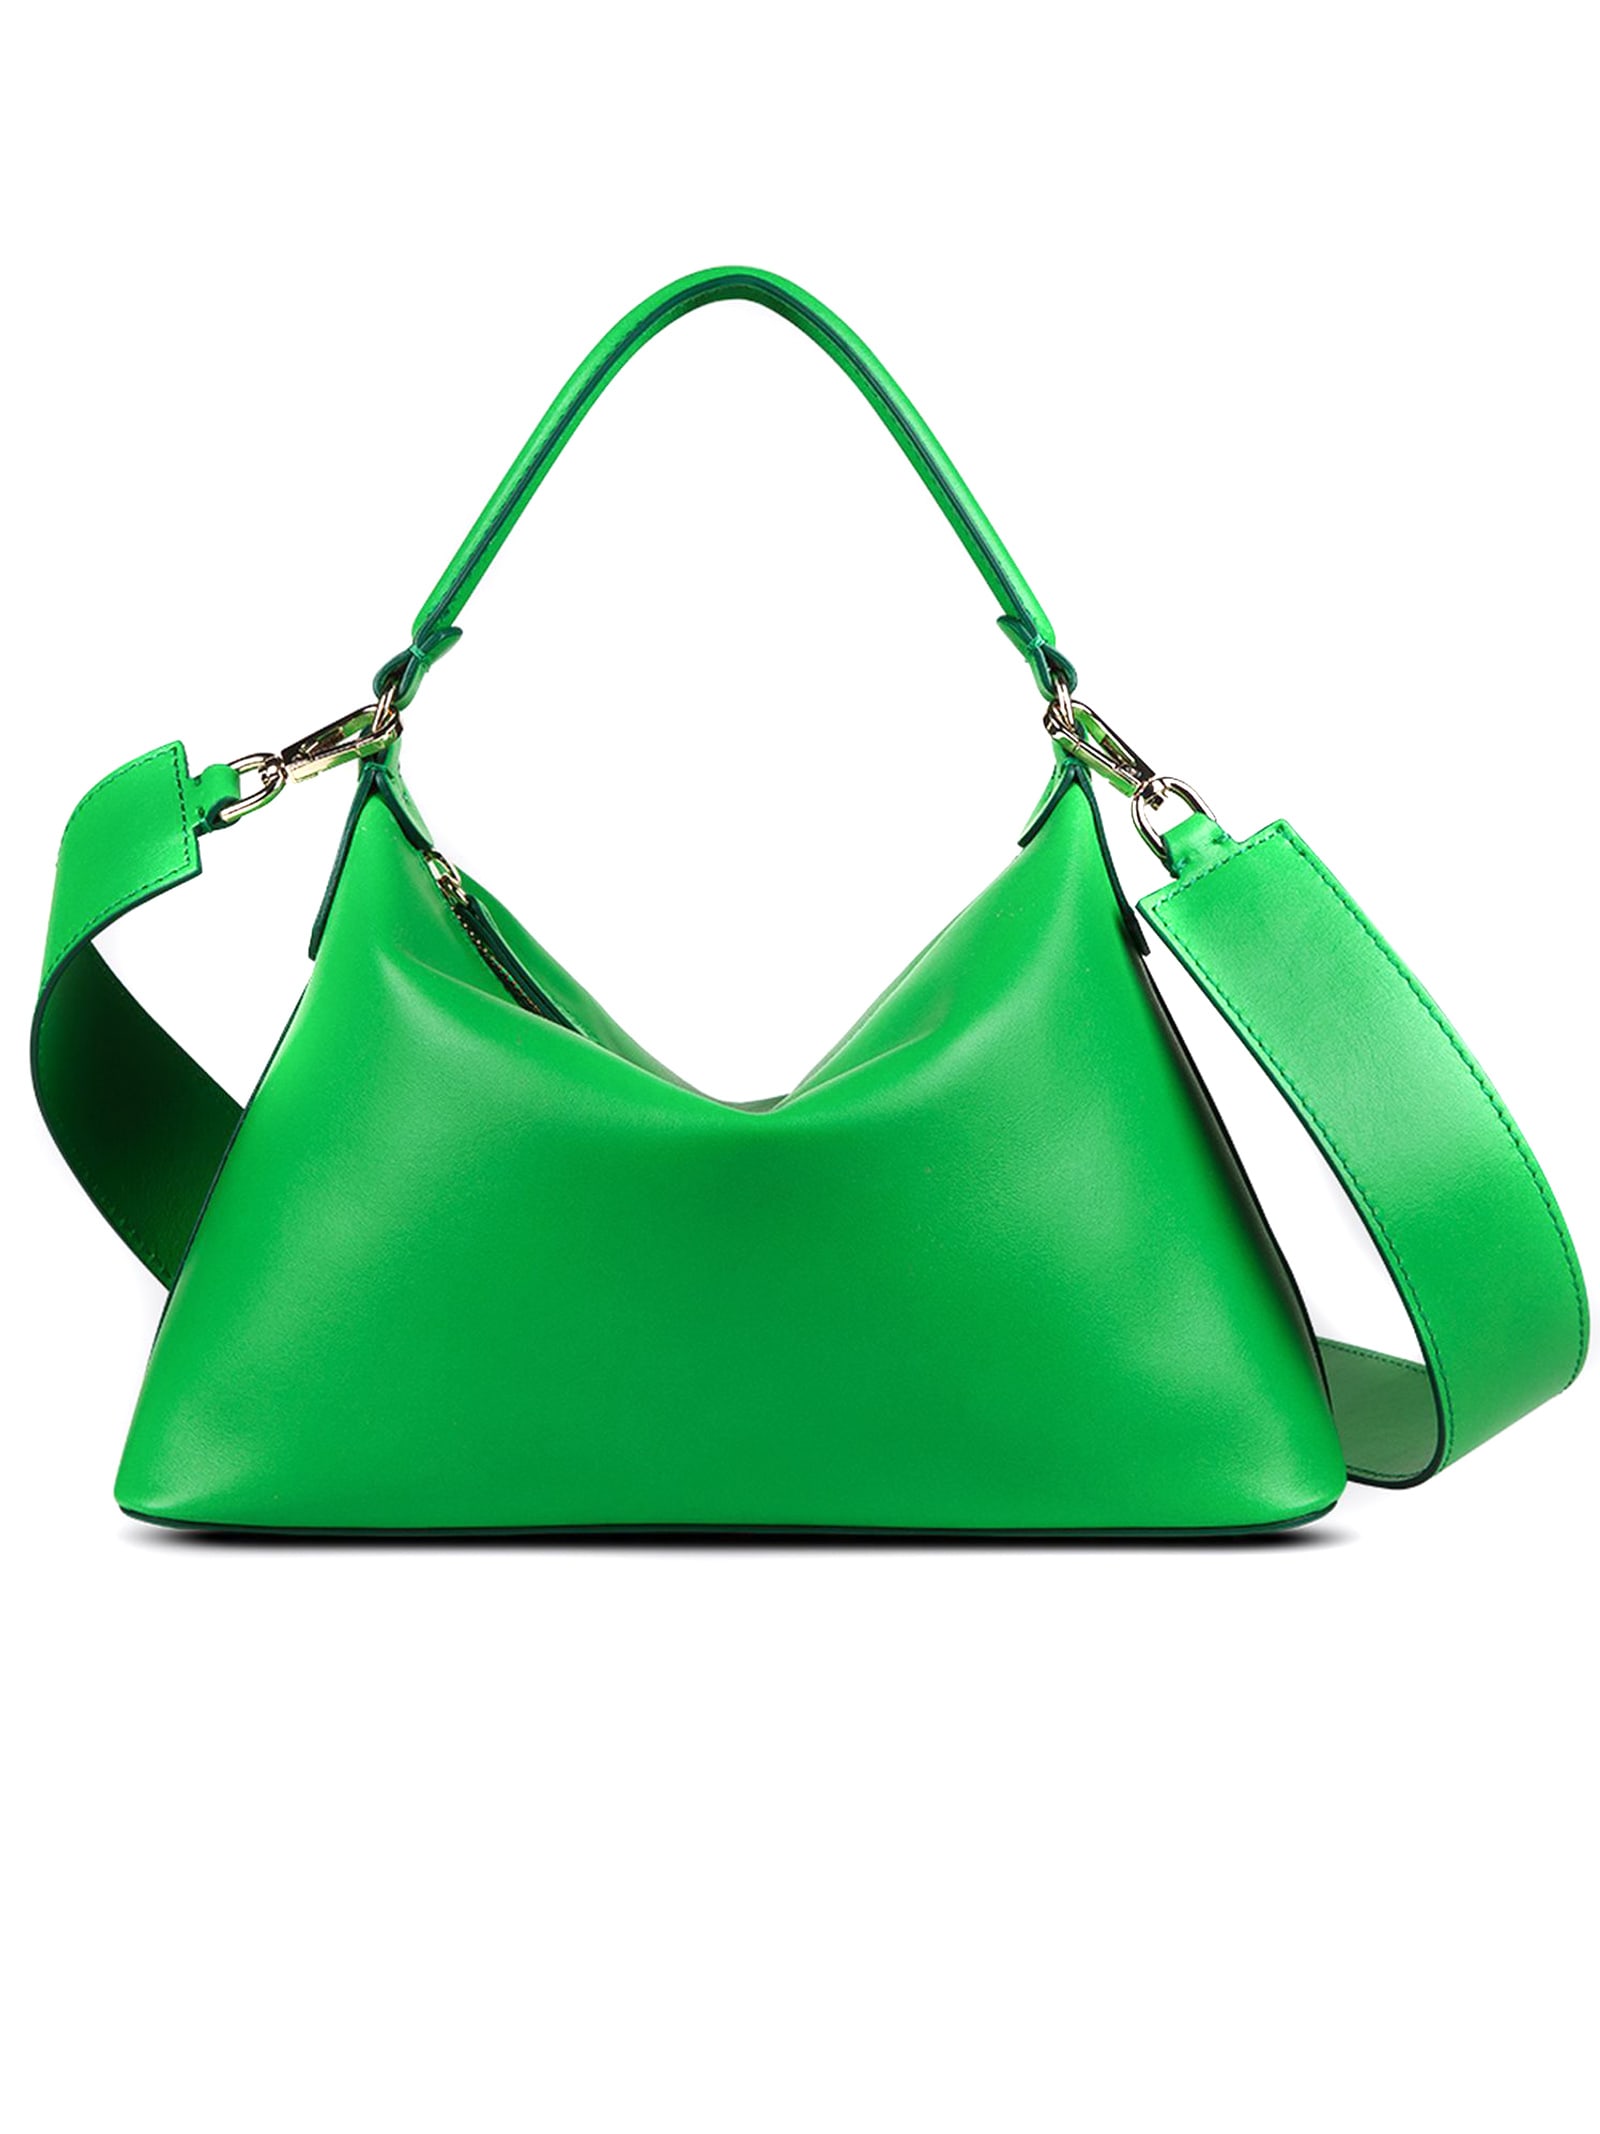 Leonie Hanne Green Small Hobo Bag